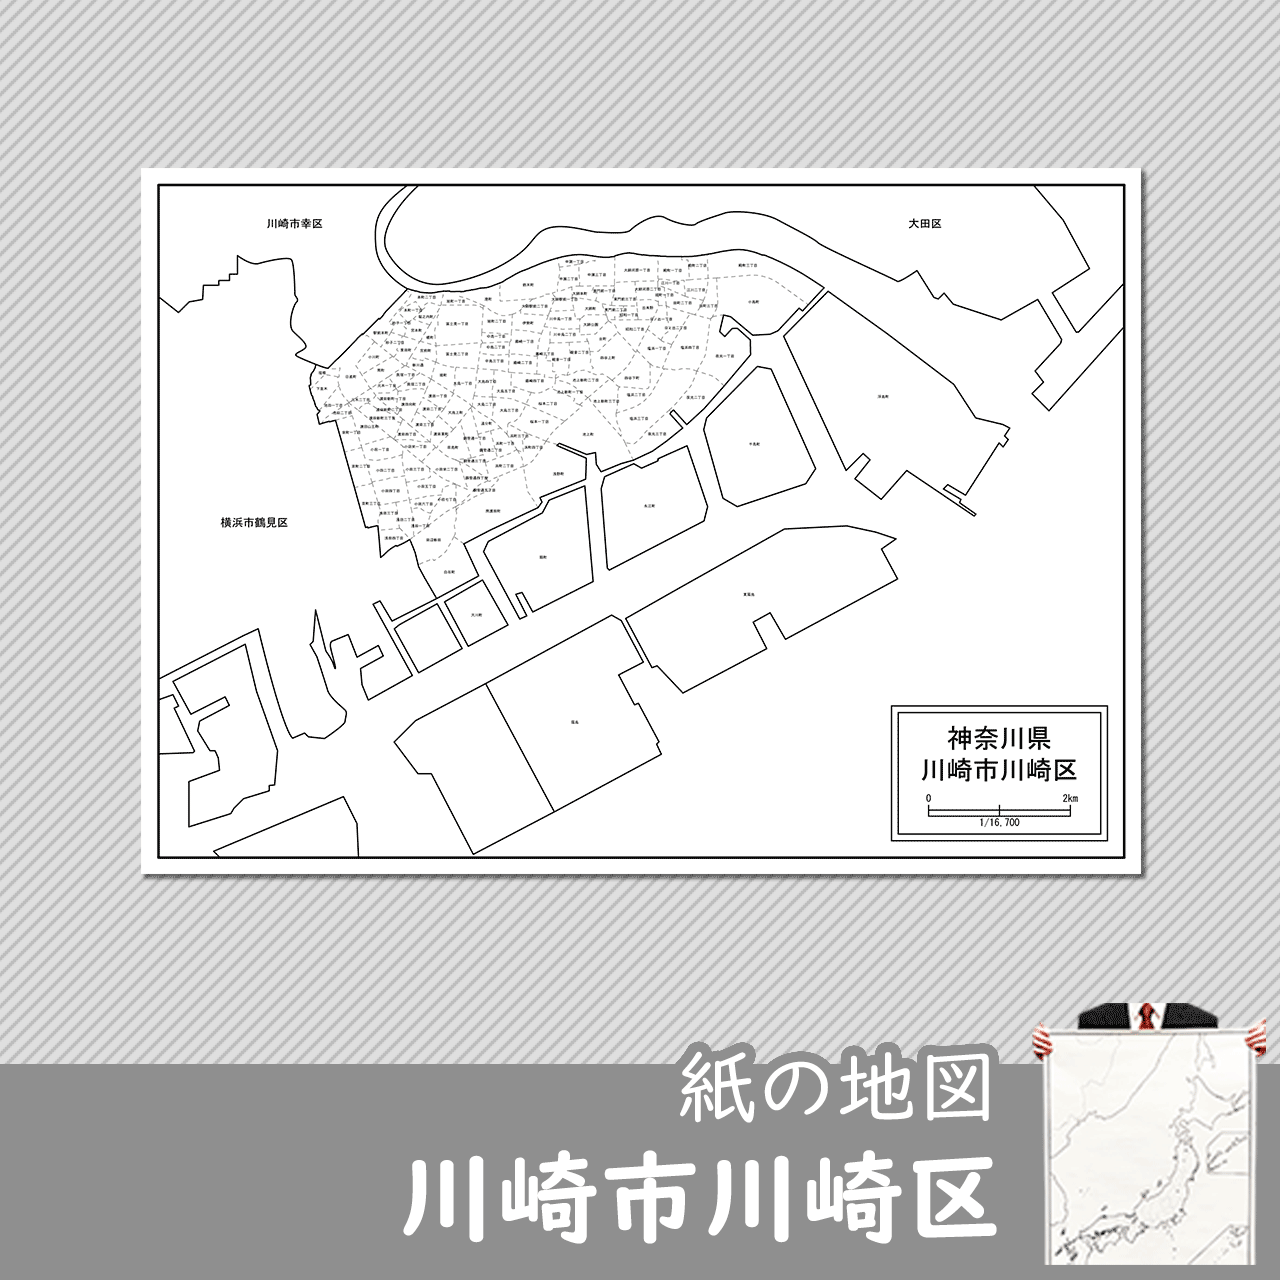 川崎市川崎区の紙の白地図のサムネイル